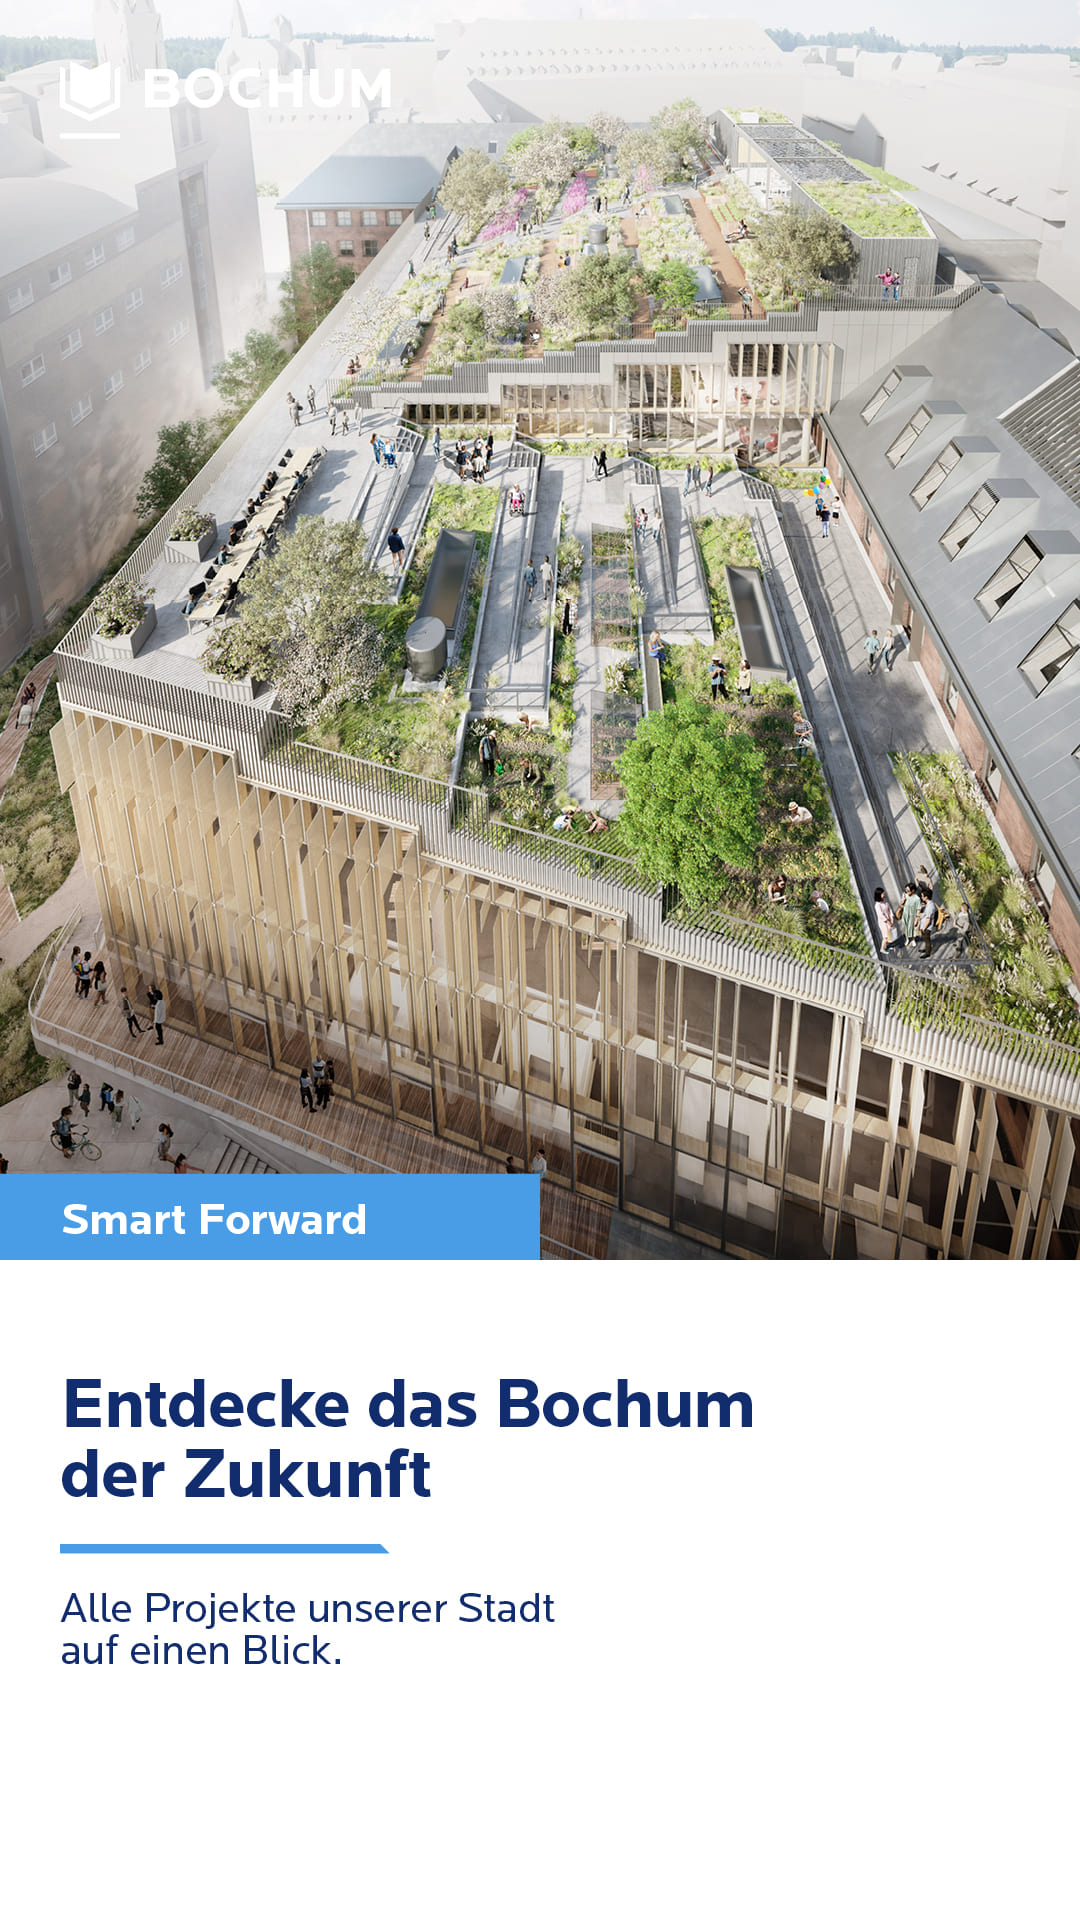 Städtisches Gebäude mit begrüntem Dach, Text "Entdecke das Bochum der Zukunft"